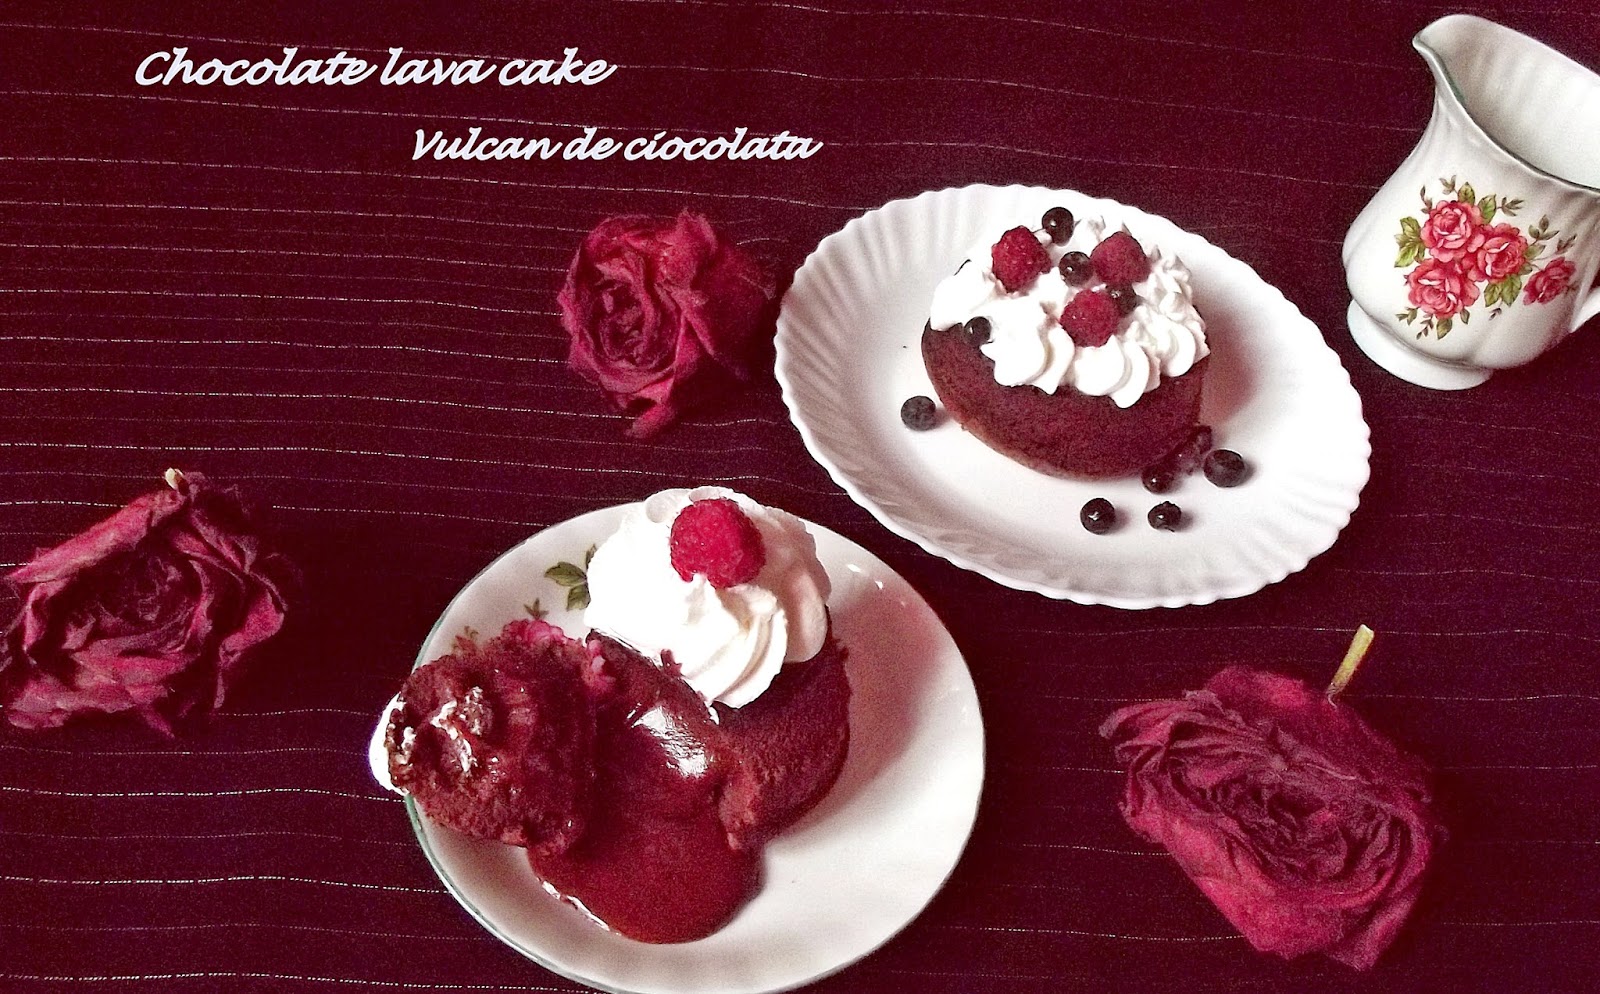 Chocolate lava cake-Vulcan de ciocolată